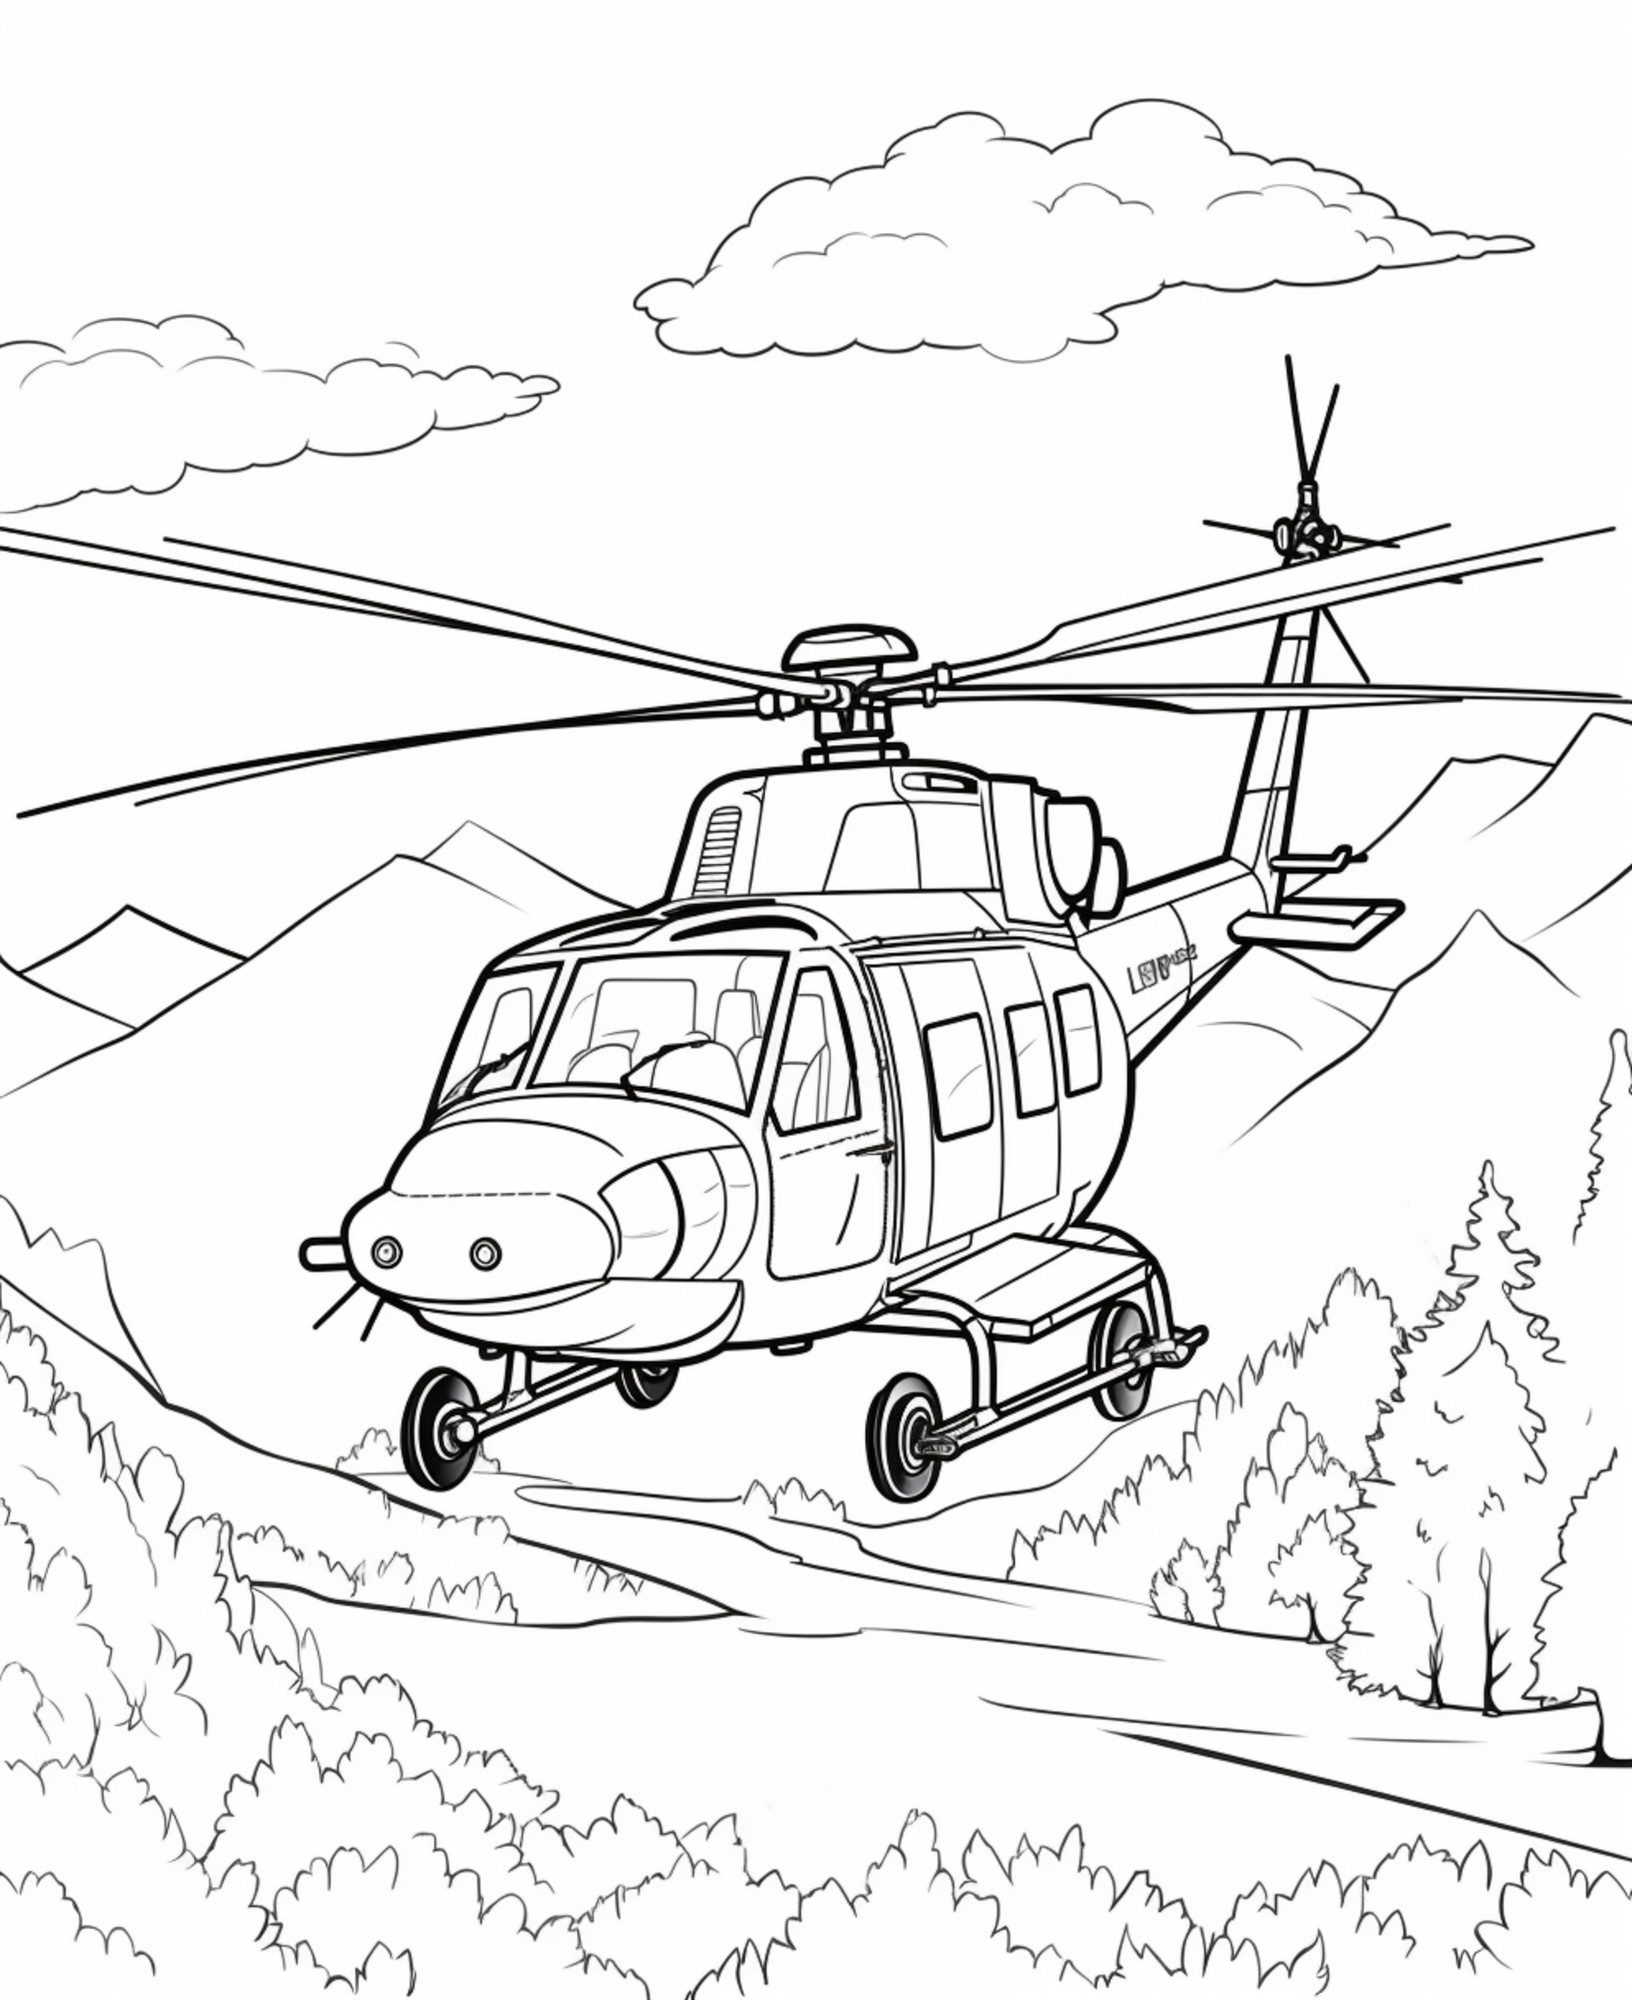 Раскраска для детей: вертолет «Небесная машина»